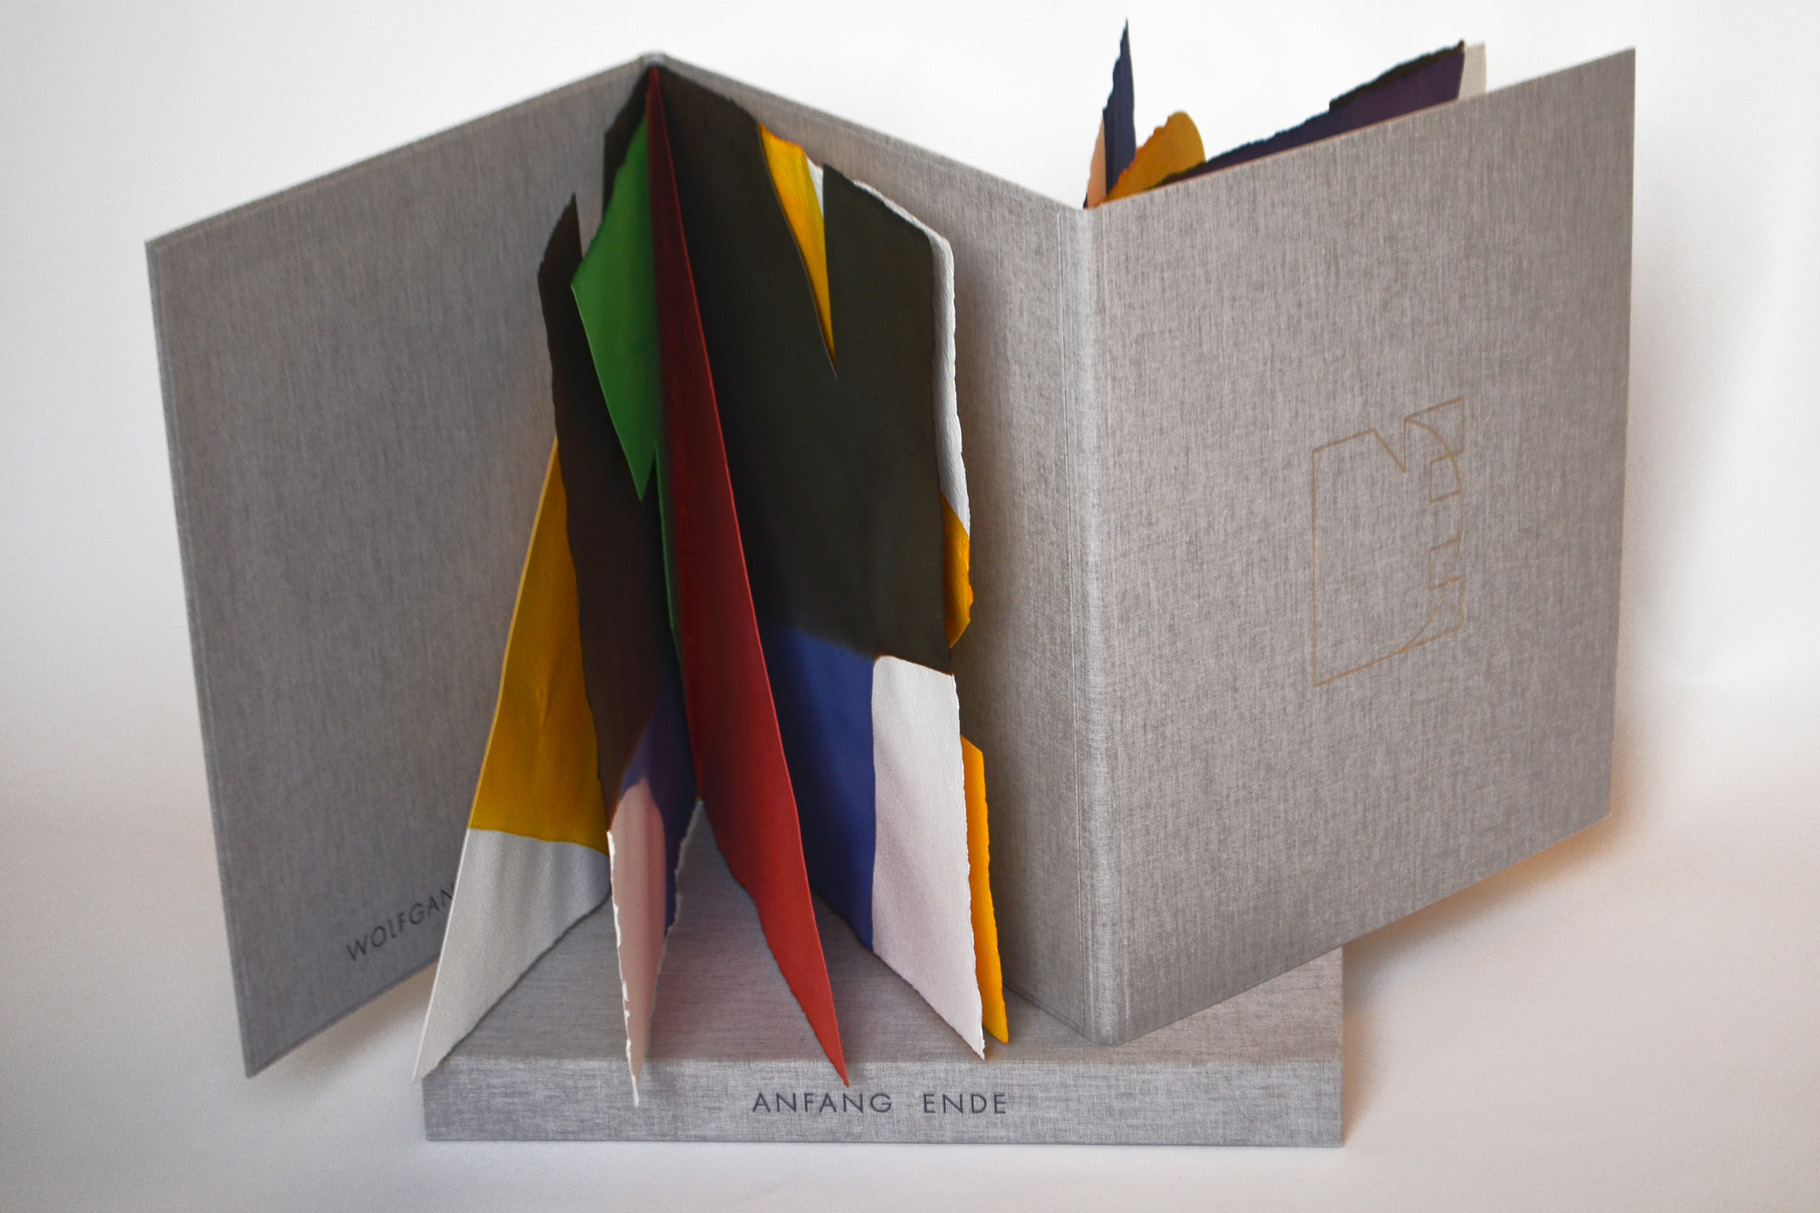 "Anfang Ende" (2010) - Ein Künstlerbuch von Wolfgang Heuwinkel, hergestellt in Zusammenarbeit mit John Gerard